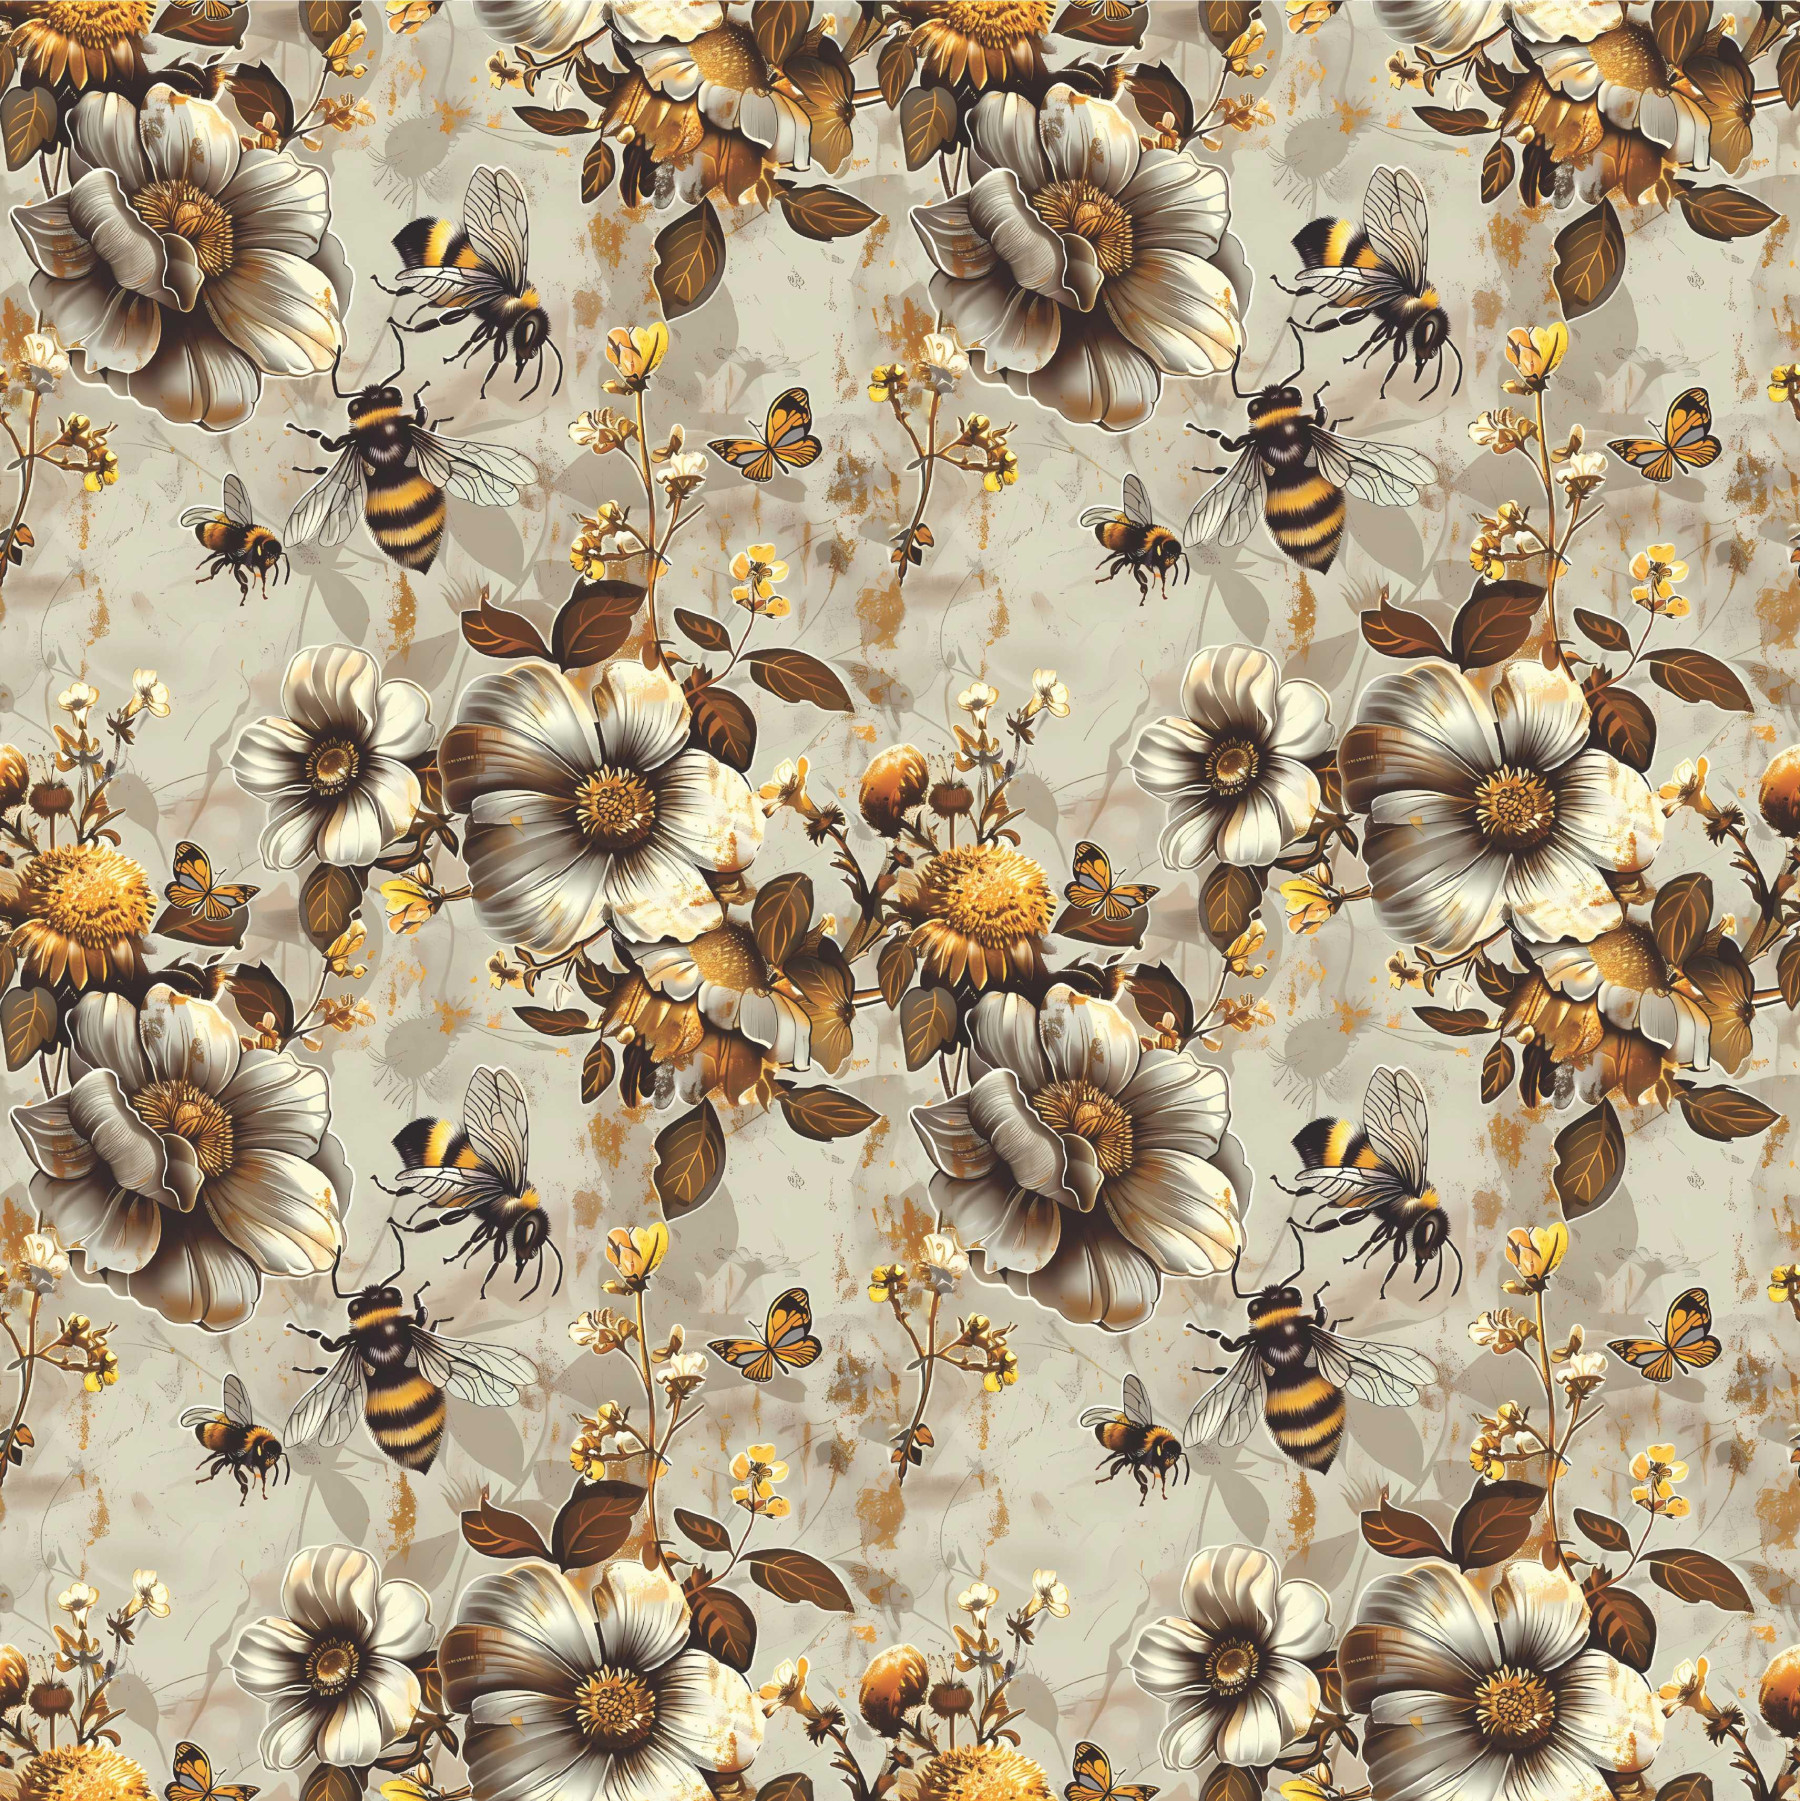 BEES & FLOWERS - Len 100%